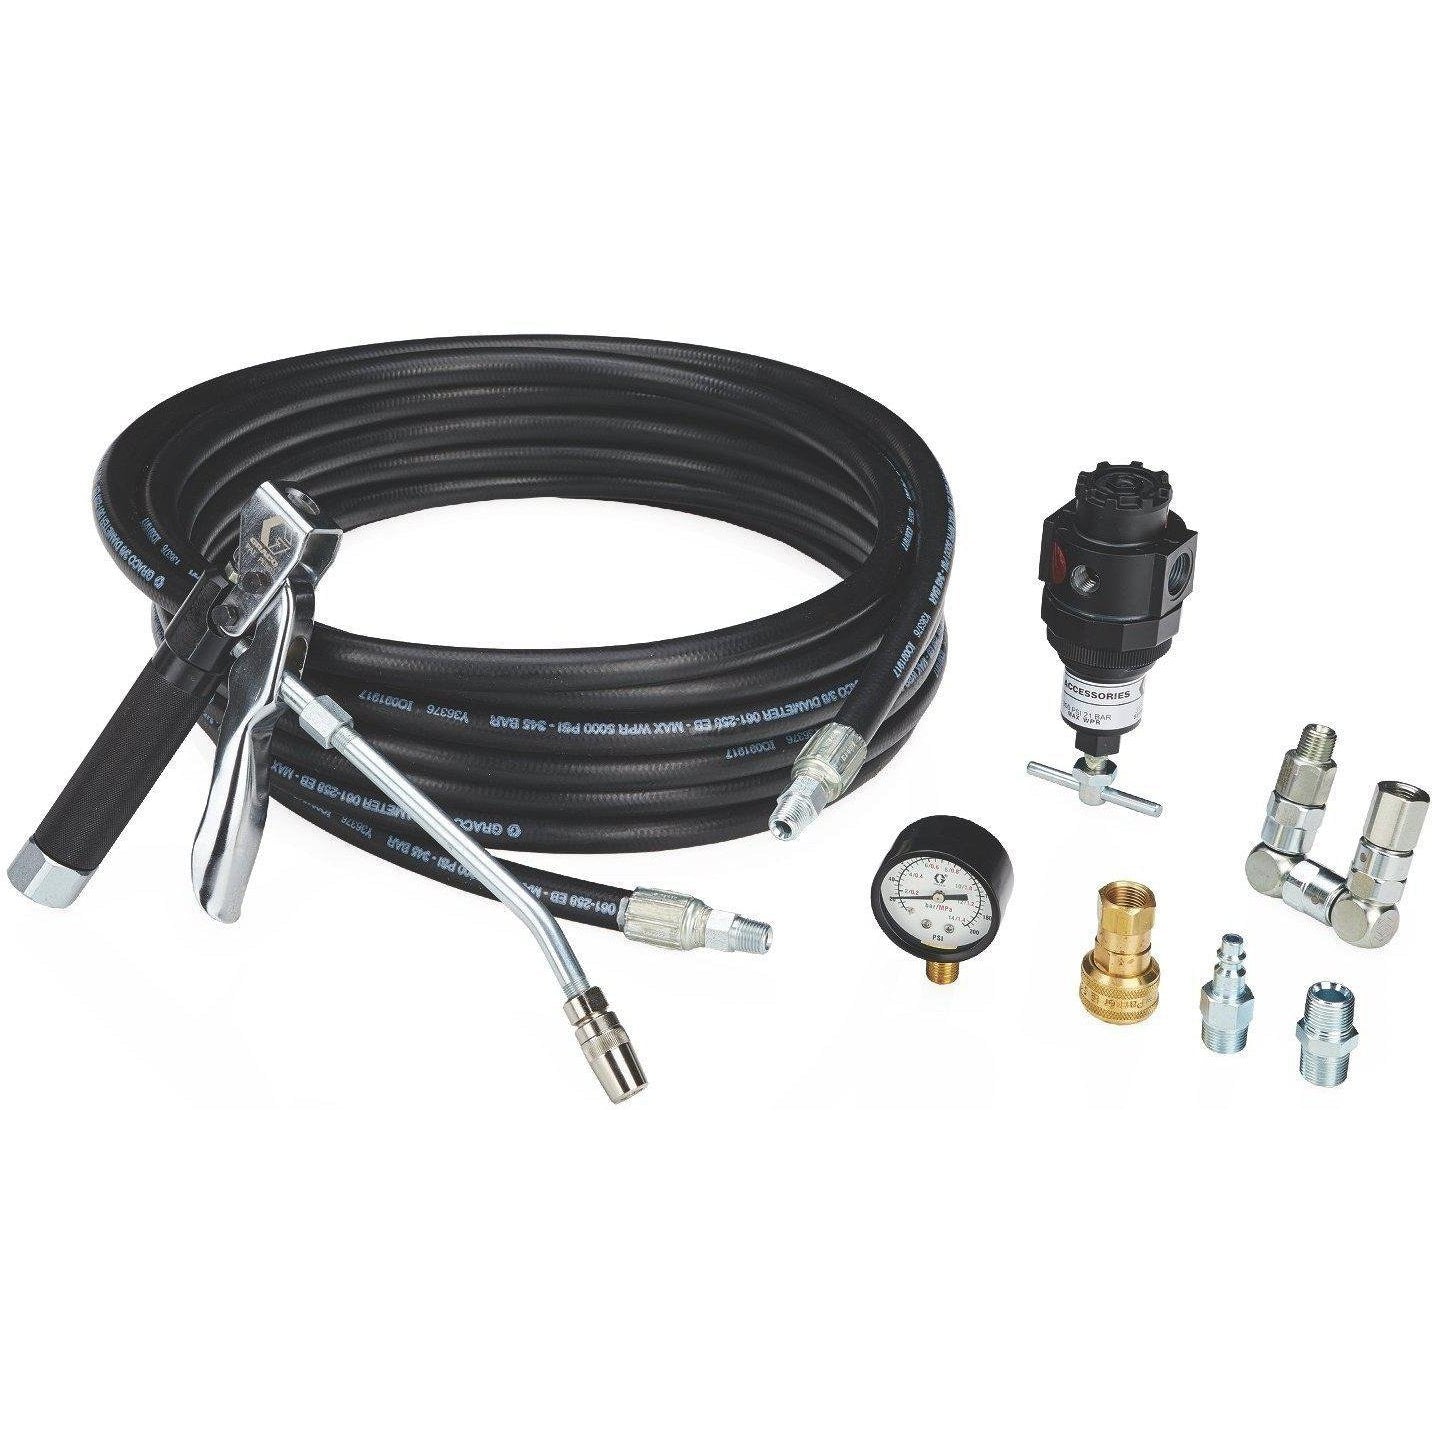 Graco 222081 Dispense Kit For Fireball 300 15:1 Grease Pump Packages - 25Ft Hose - Fireball Equipment Ltd.